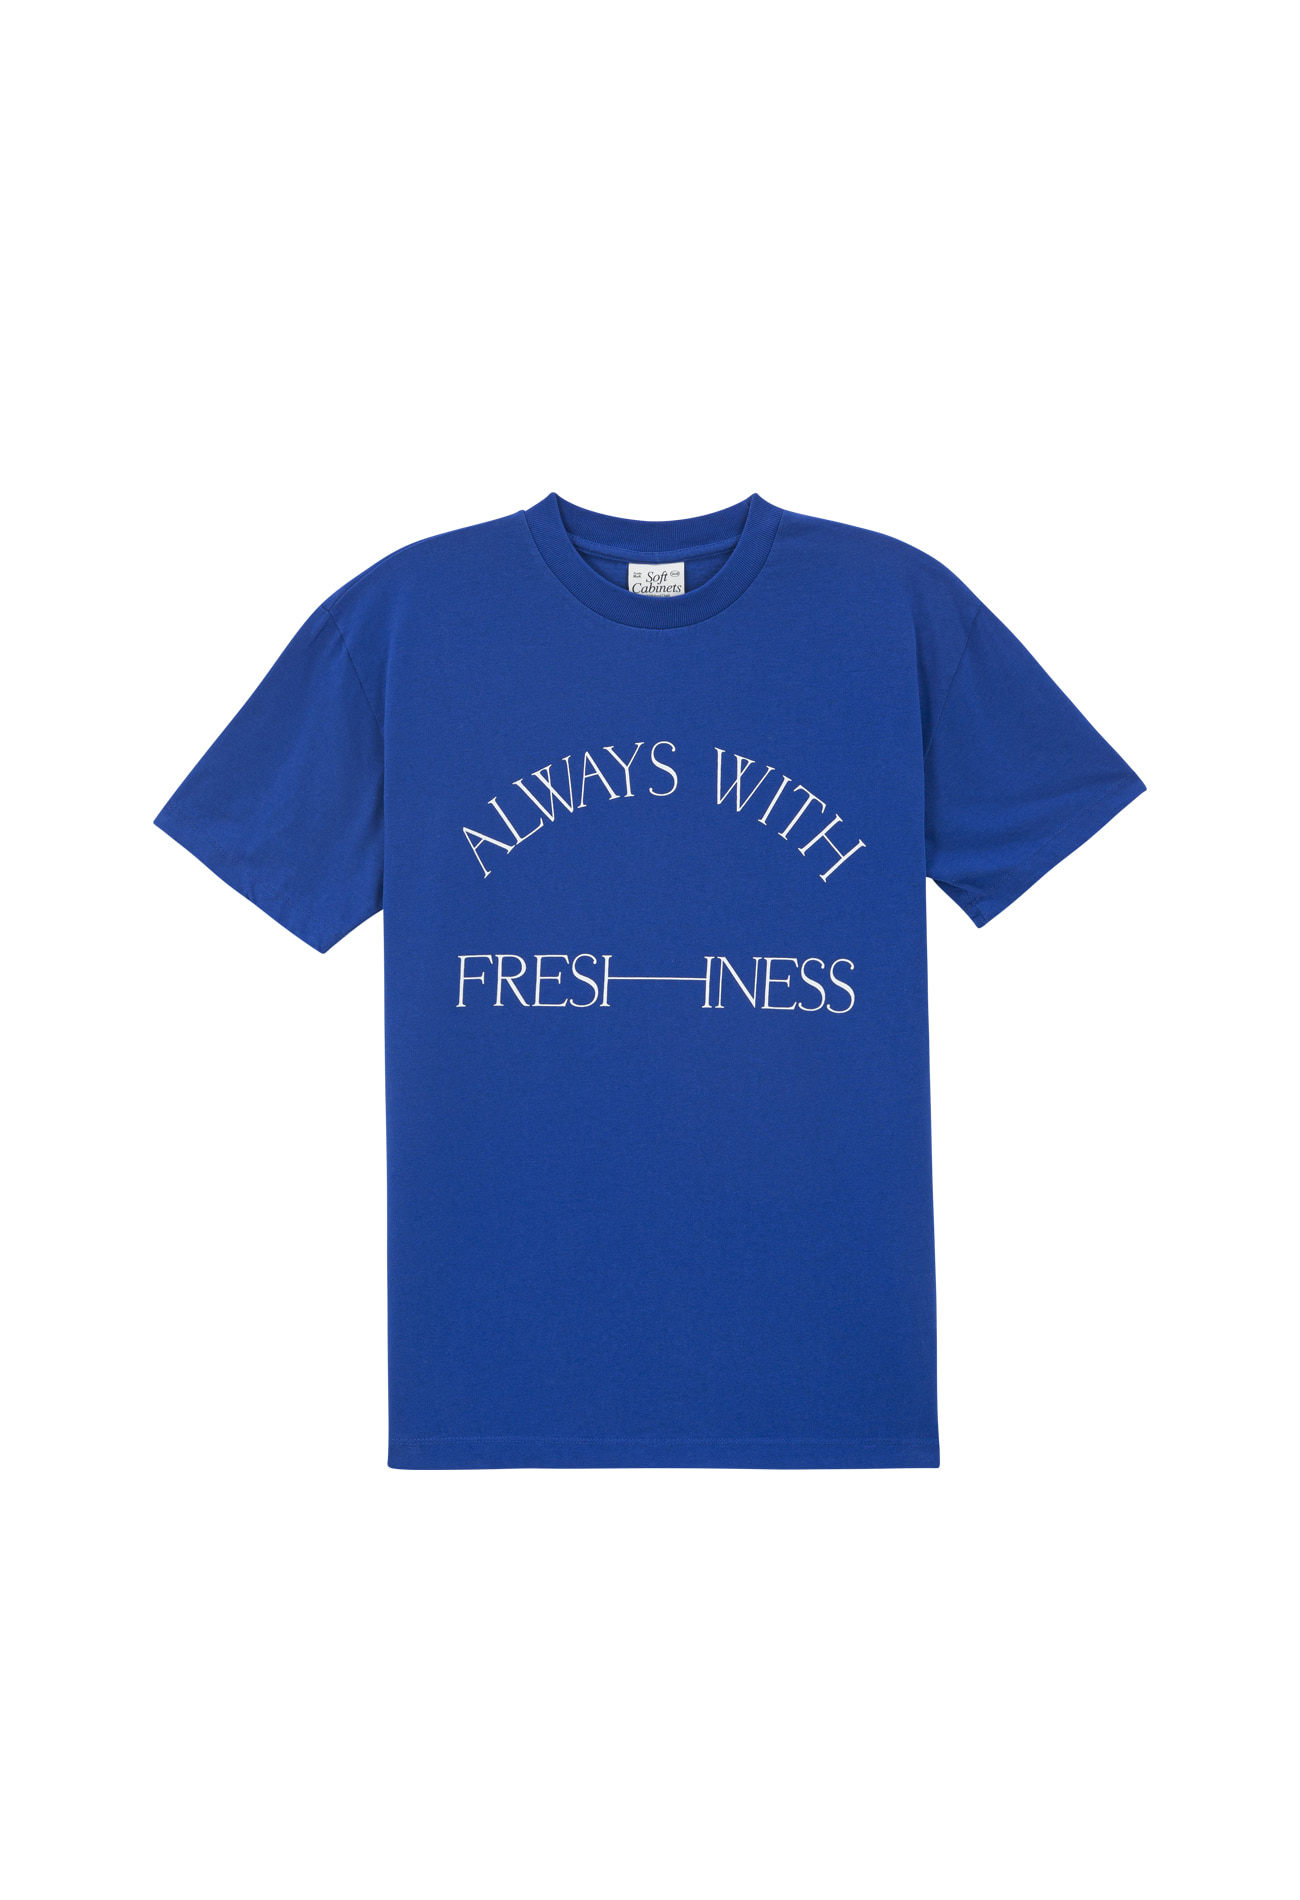 Freshness T-shirt Blue